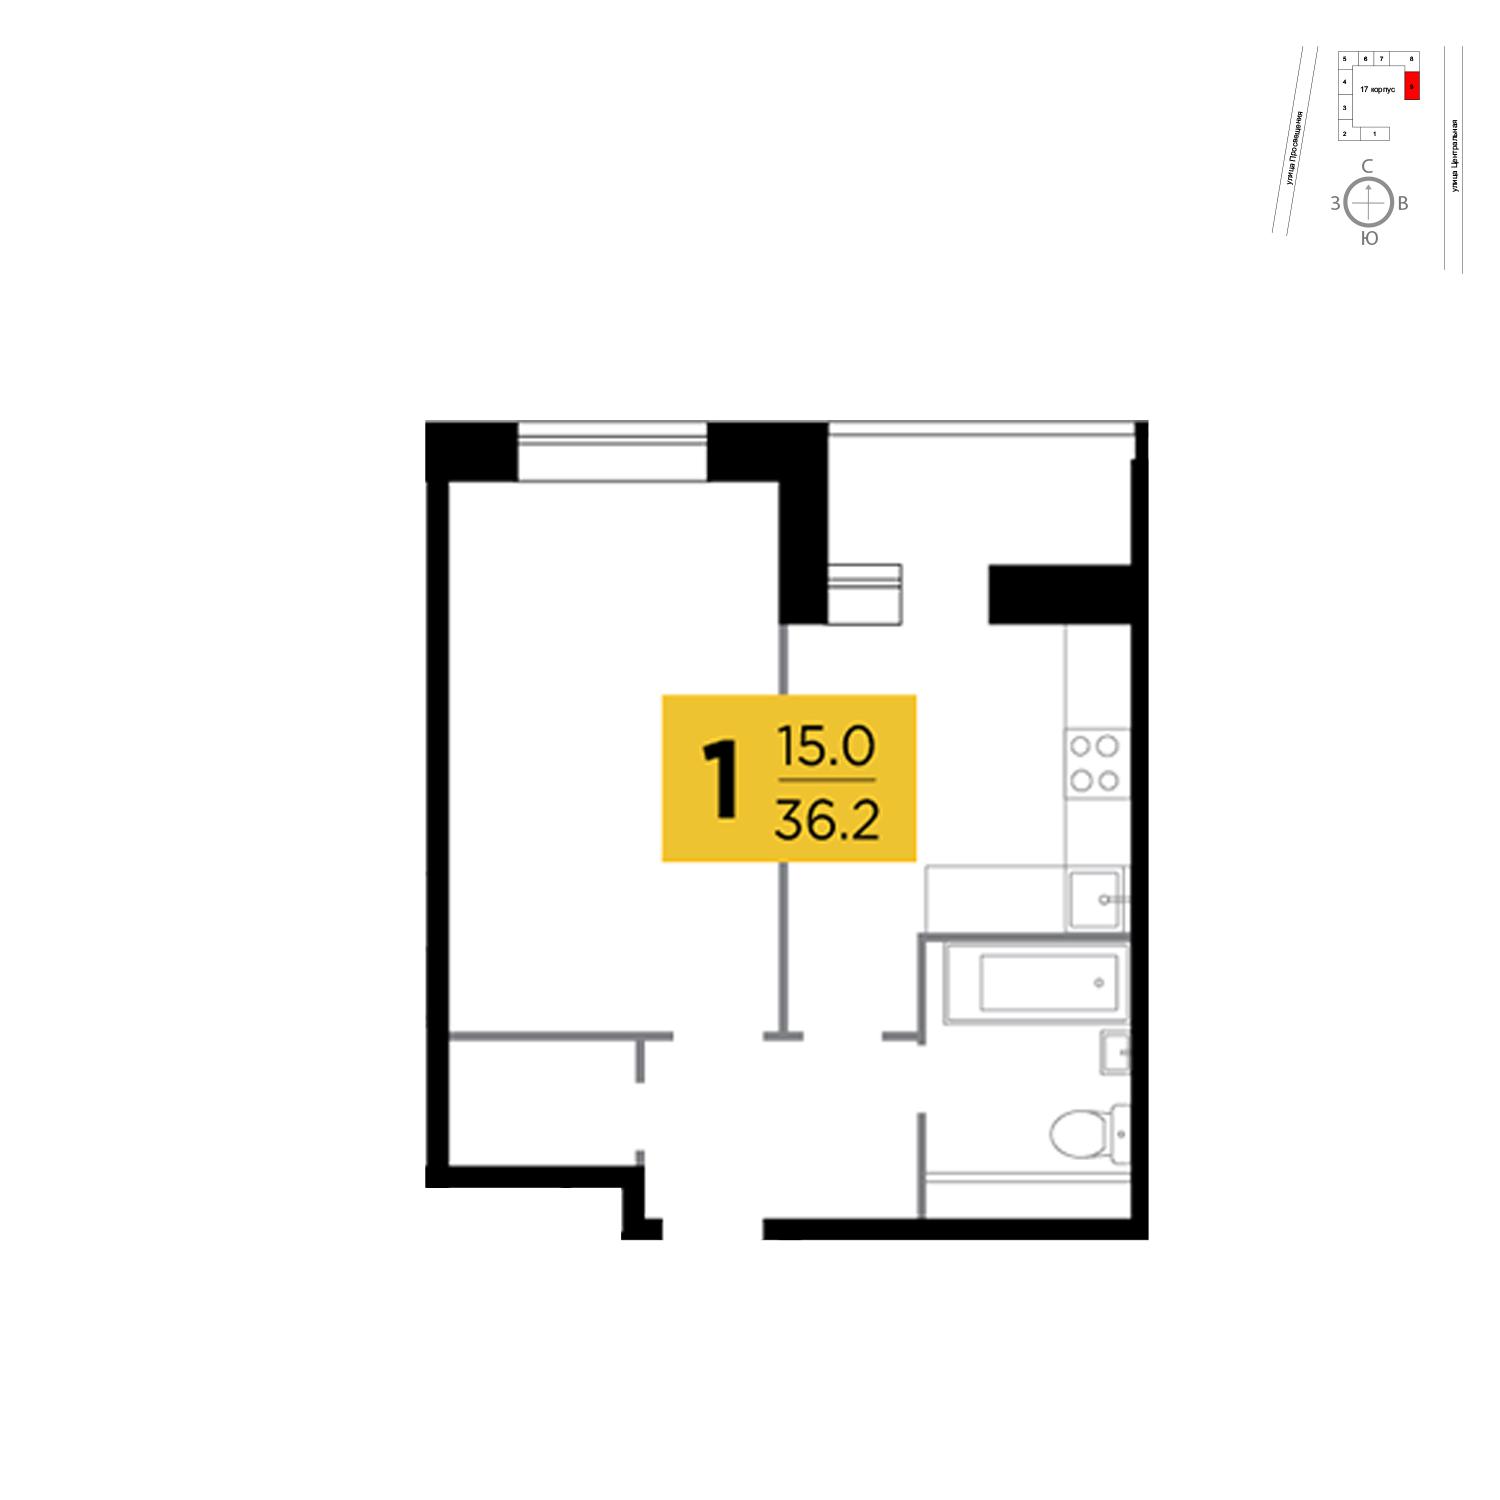 Продаётся 1-комнатная квартира в новостройке 36.2 кв.м. этаж 8/16 за 6 801 669 руб 